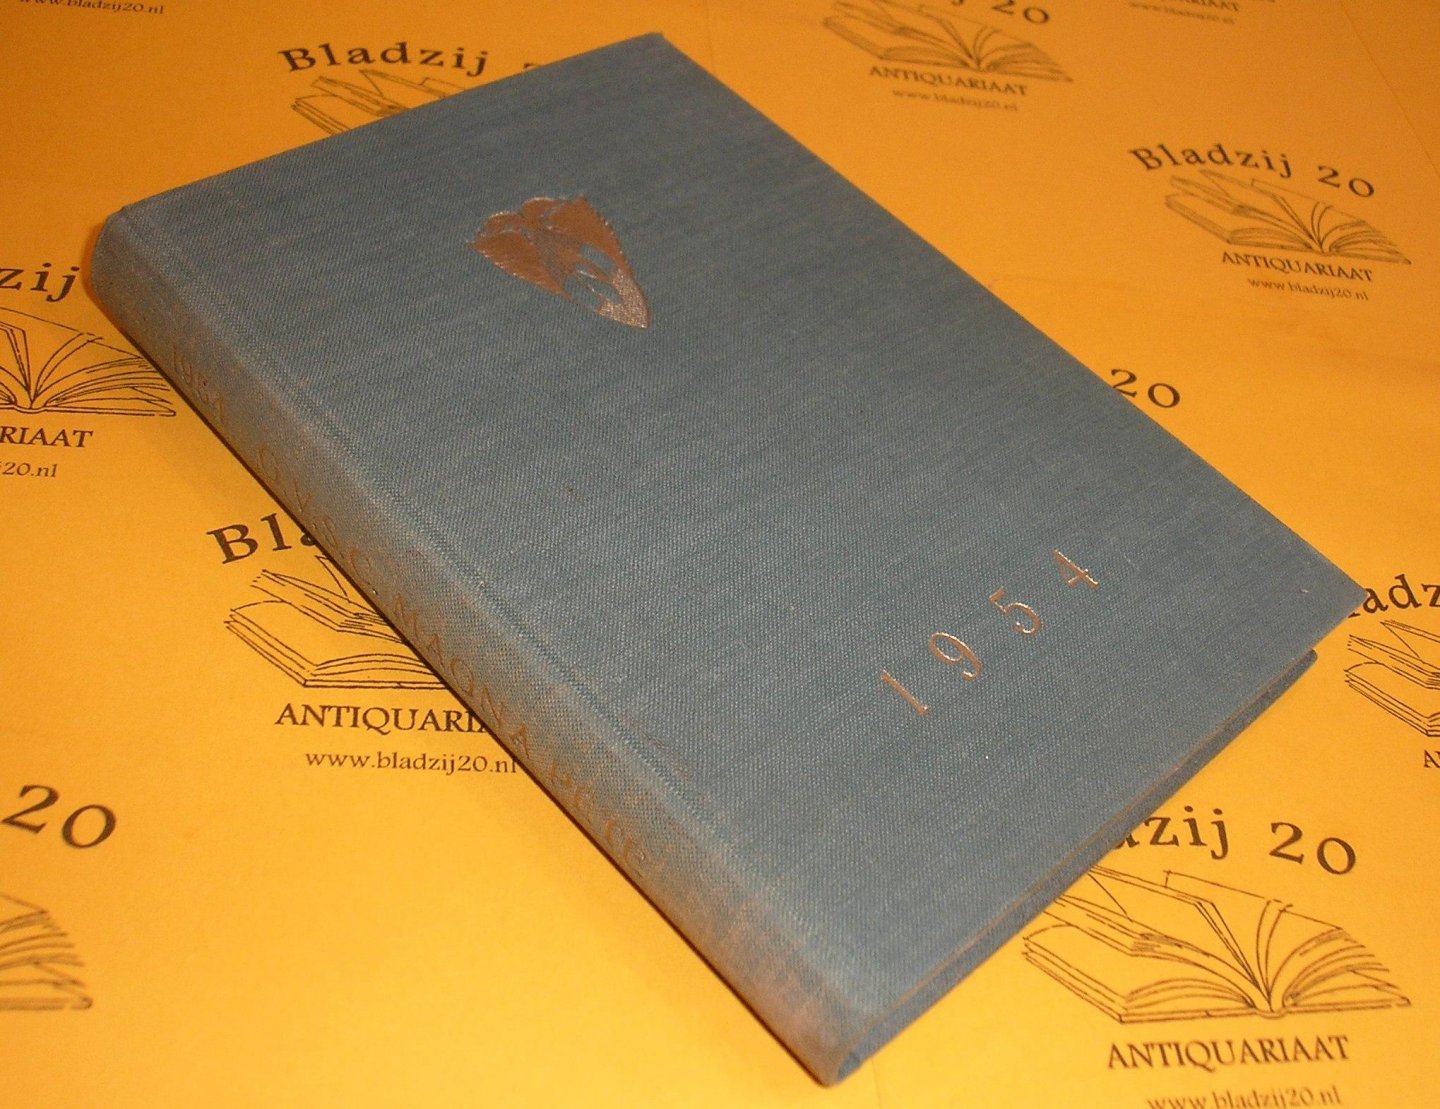 Almanak Magna Pete 1954. - Almanak der Groningsche vrouwelijke studentenclub Magna Pete 1954.